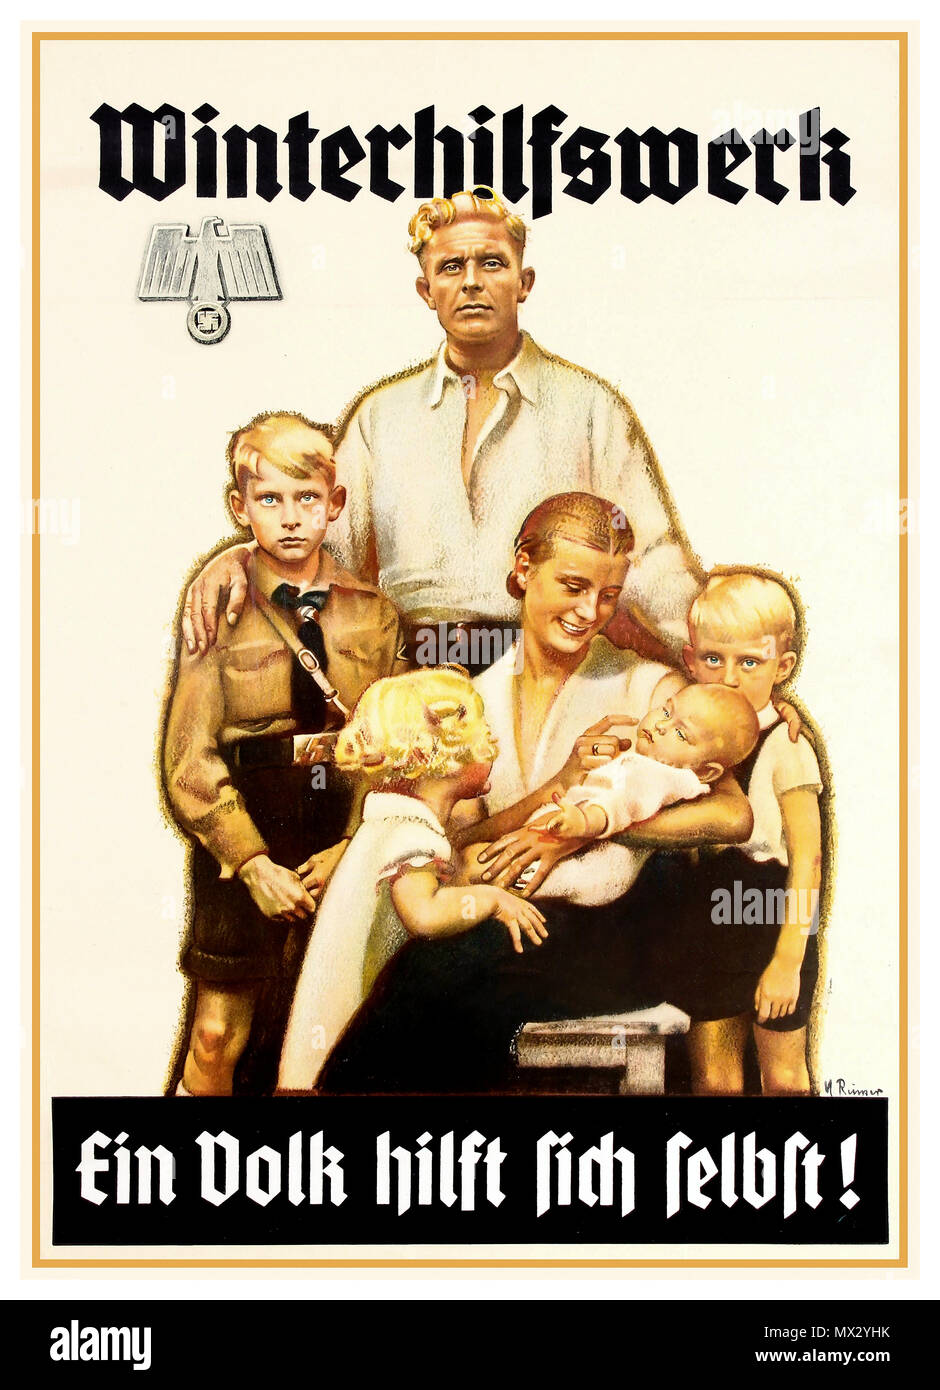 'Winterhilfswerk' Vintage 1940's WW2 Nazi Propaganda Poster avec stéréotypé nazi «idéal» blond aryen groupe de six familles allemandes, dont un garçon en uniforme de la jeunesse hitlérienne, promouvant une œuvre de charité nazie pour aider les autres dans le besoin. La famille de l'Allemagne nazie est baignée dans une lumière chaude et brillante. 'Winterhilfswerk' Allemagne nazie Seconde Guerre mondiale Seconde Guerre mondiale WINTERHILFSWERK - EIN VOLK HILFT SICH SELBST! [TRAVAIL DE SECOURS HIVERNAL - UN PEUPLE S'AIDE LUI-MÊME] Banque D'Images